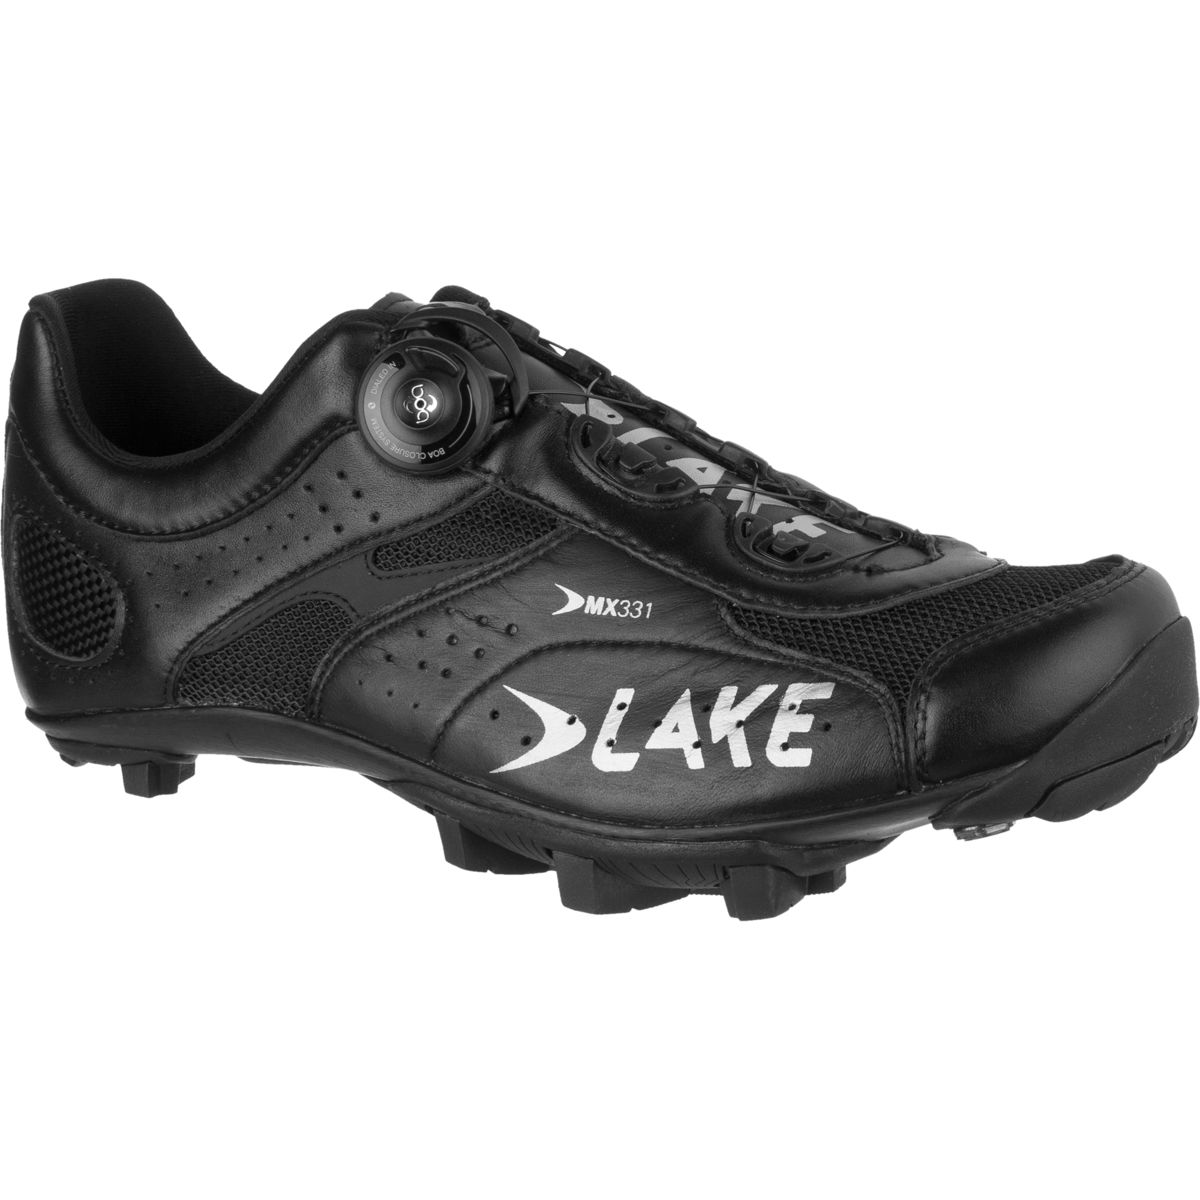 Lake MX331 Shoe - Men's Black/Silver, 40.0